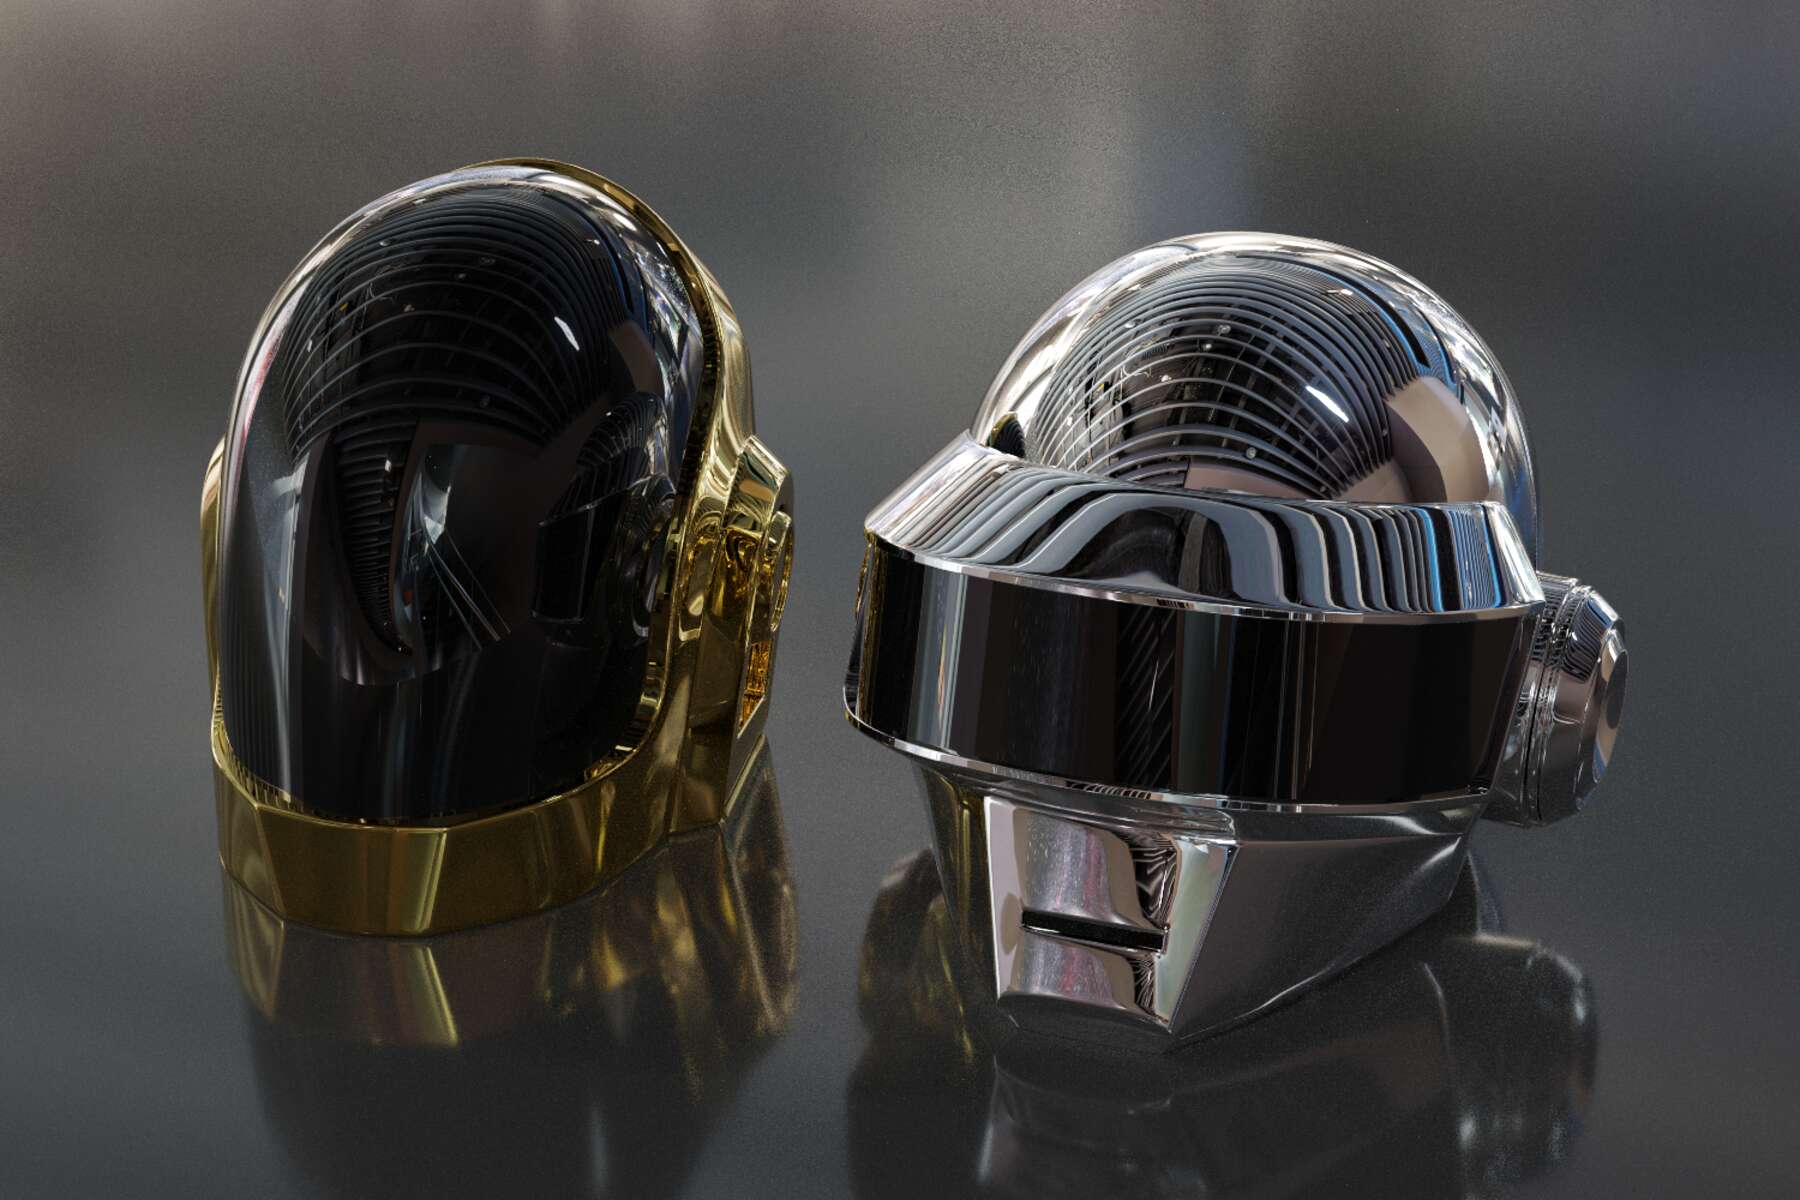 Daft Punk Helmet for sale in UK | 43 used Daft Punk Helmets